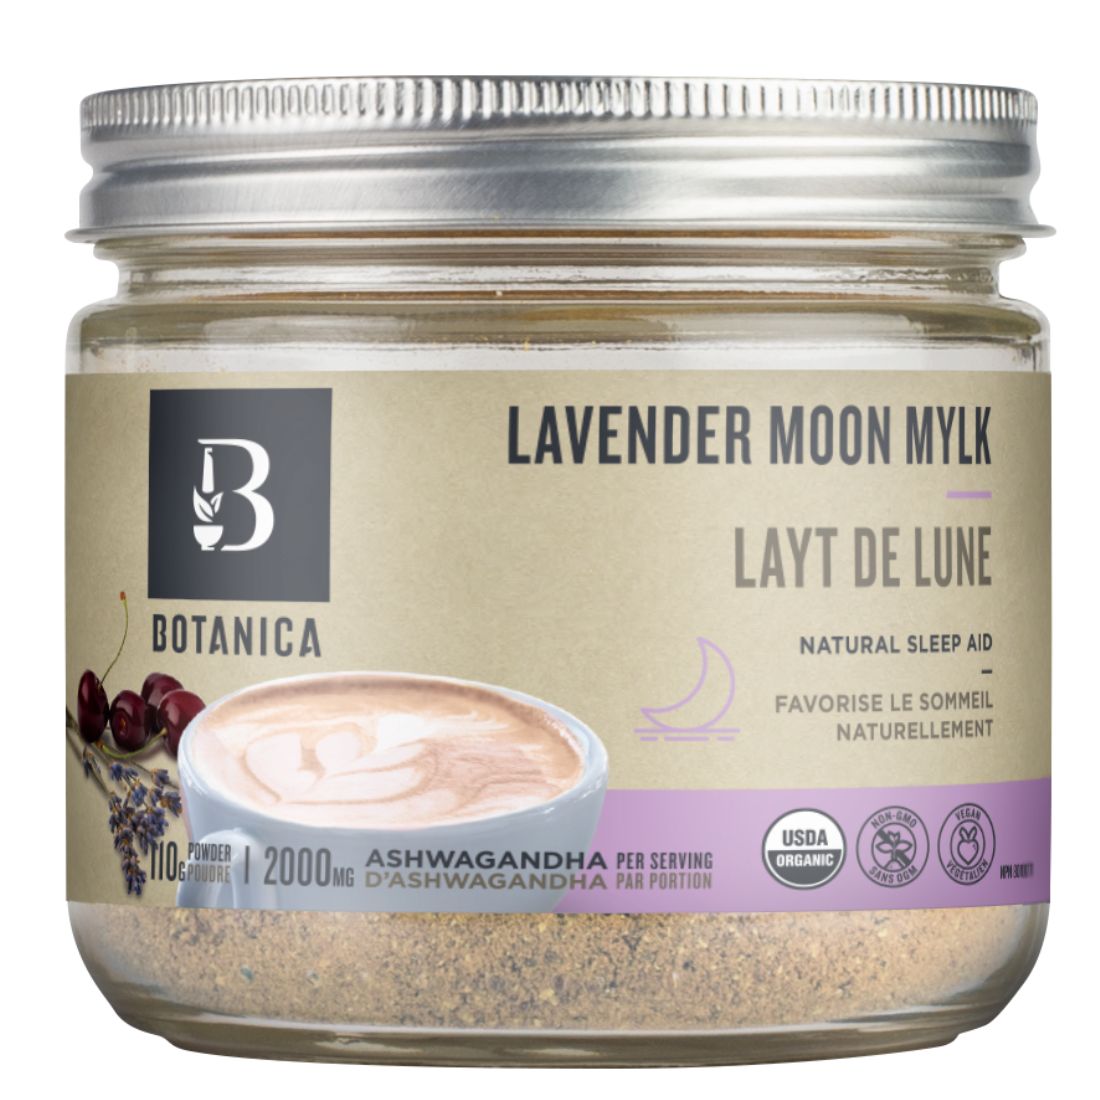 Botanica Lavender Moon Mylk with Organic Ashwagandha, 80g